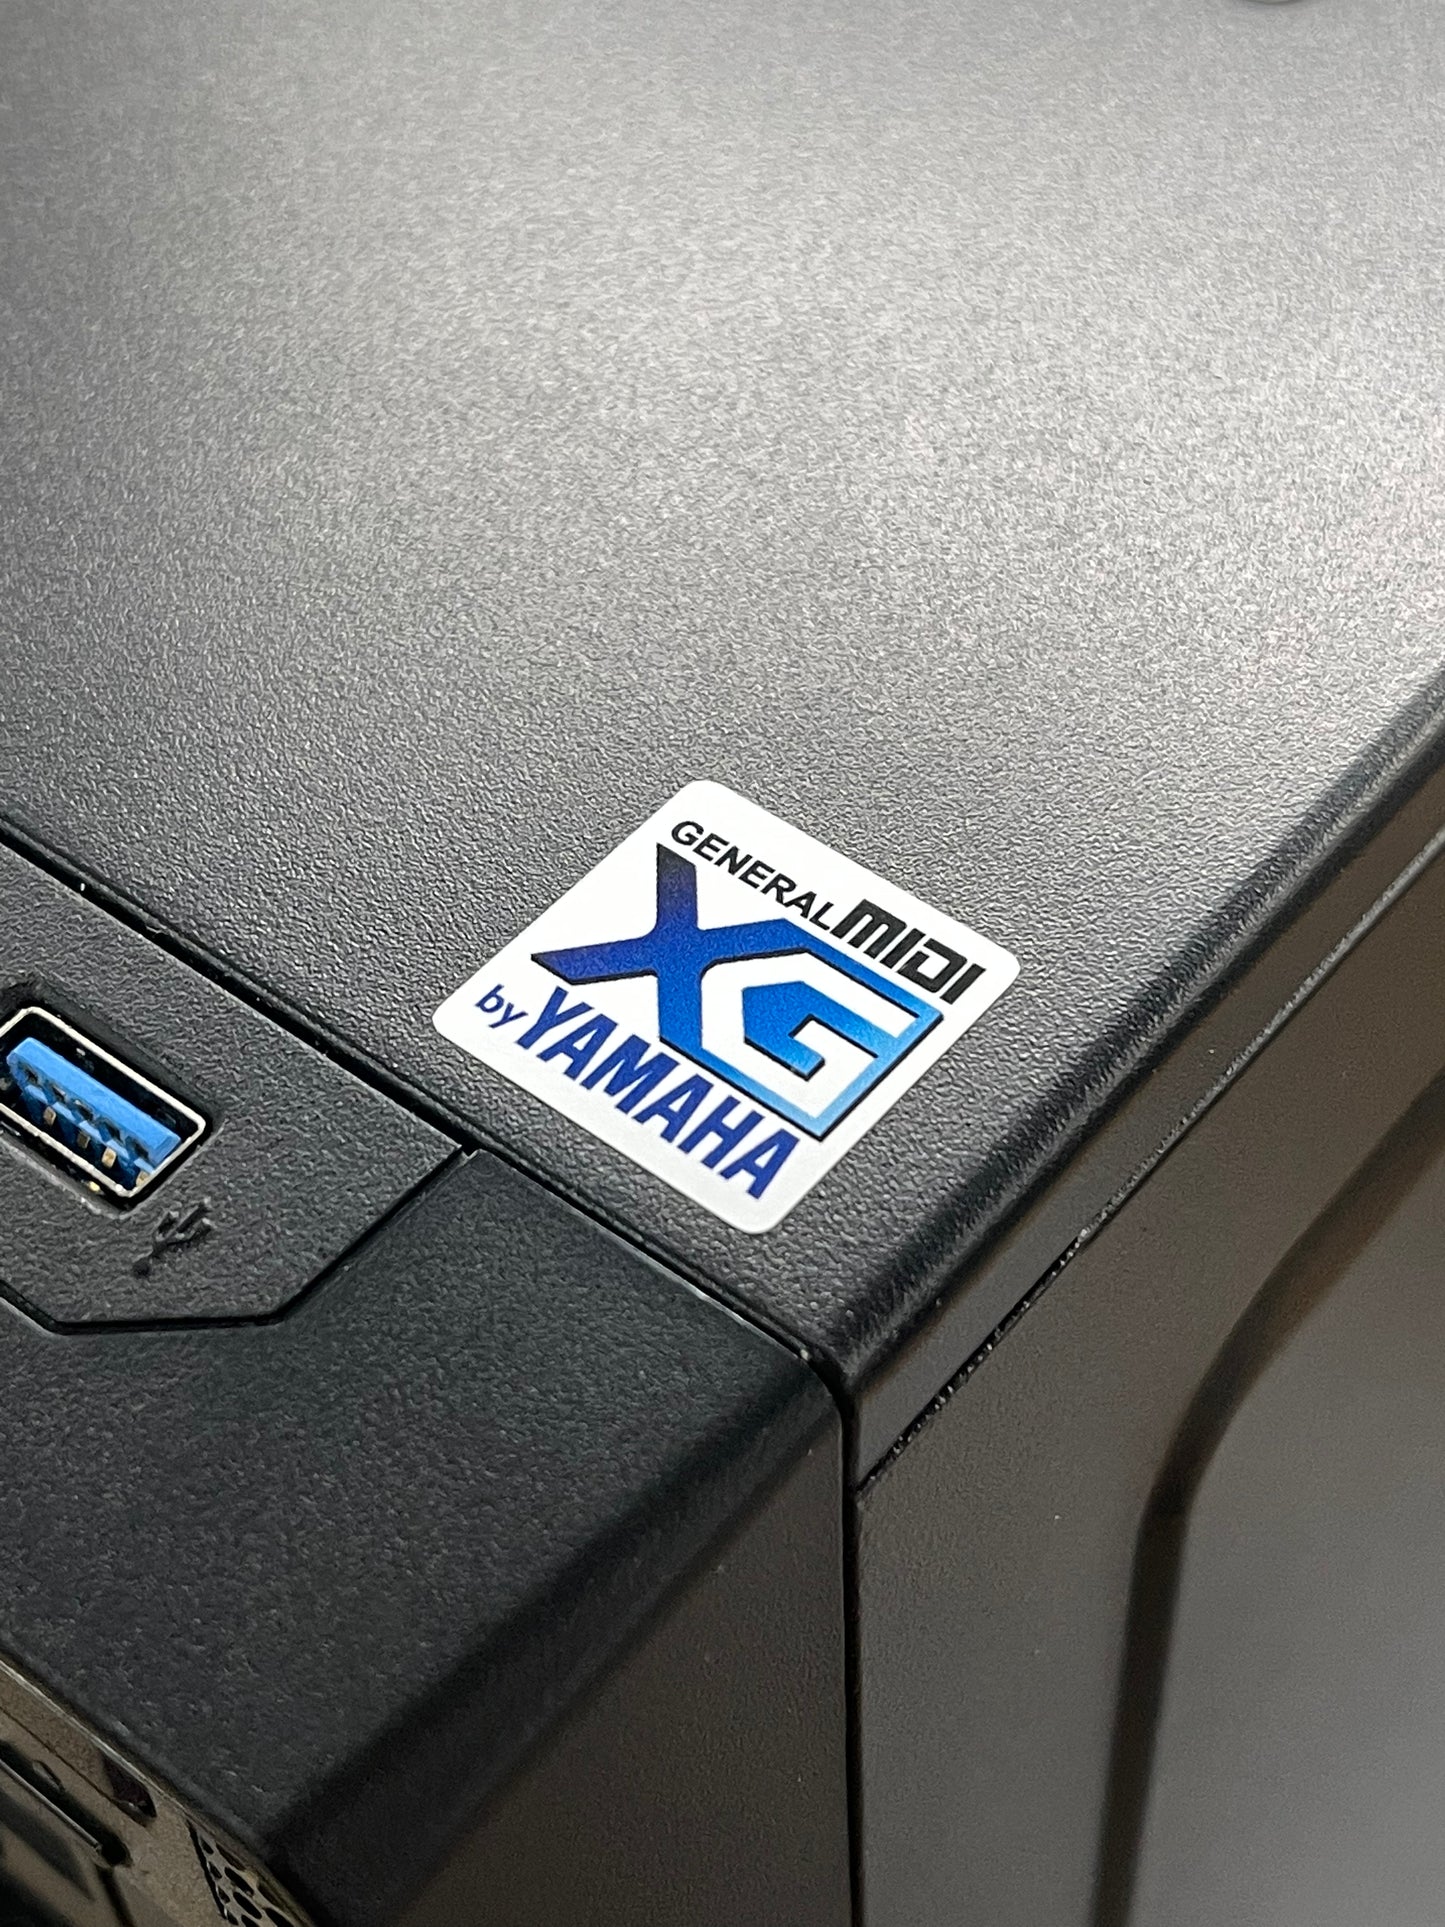 Yamaha XG General MIDI Audio Case Badge Sticker - White